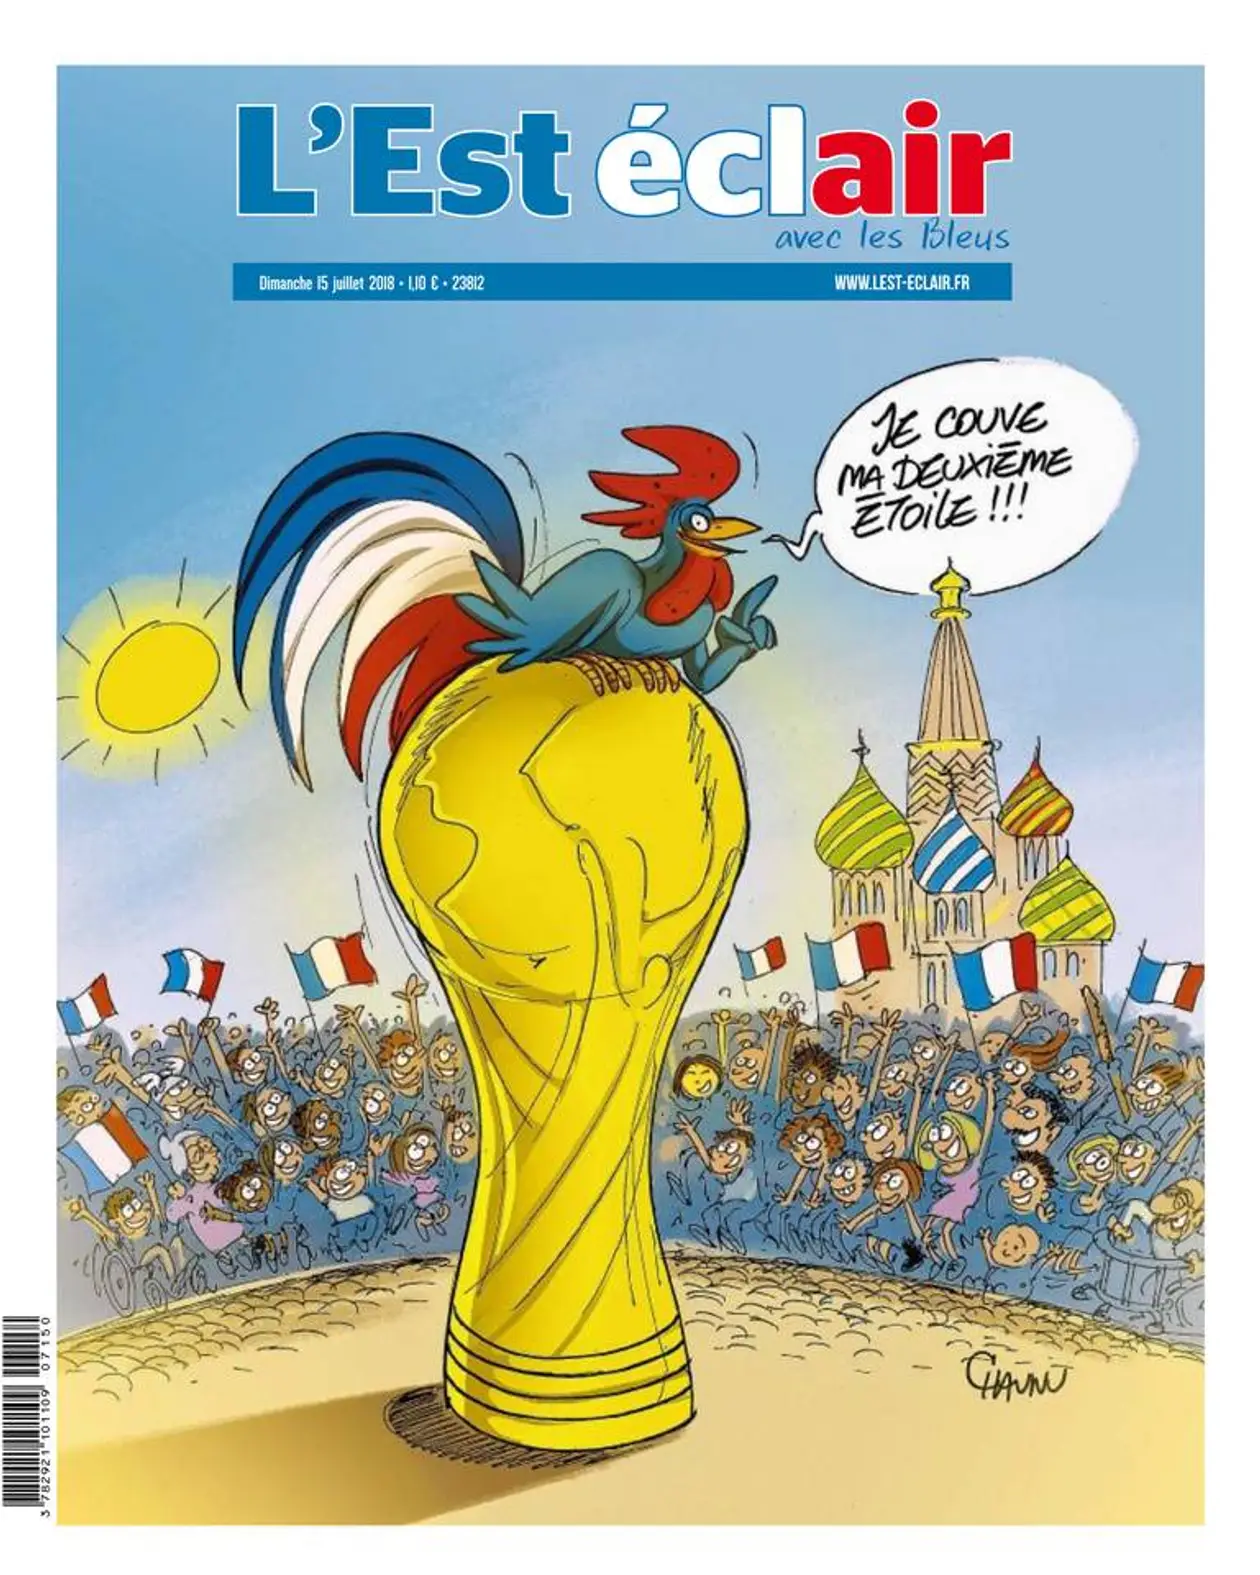 Первые полосы французских газет в день финала мирового первенства по футболу